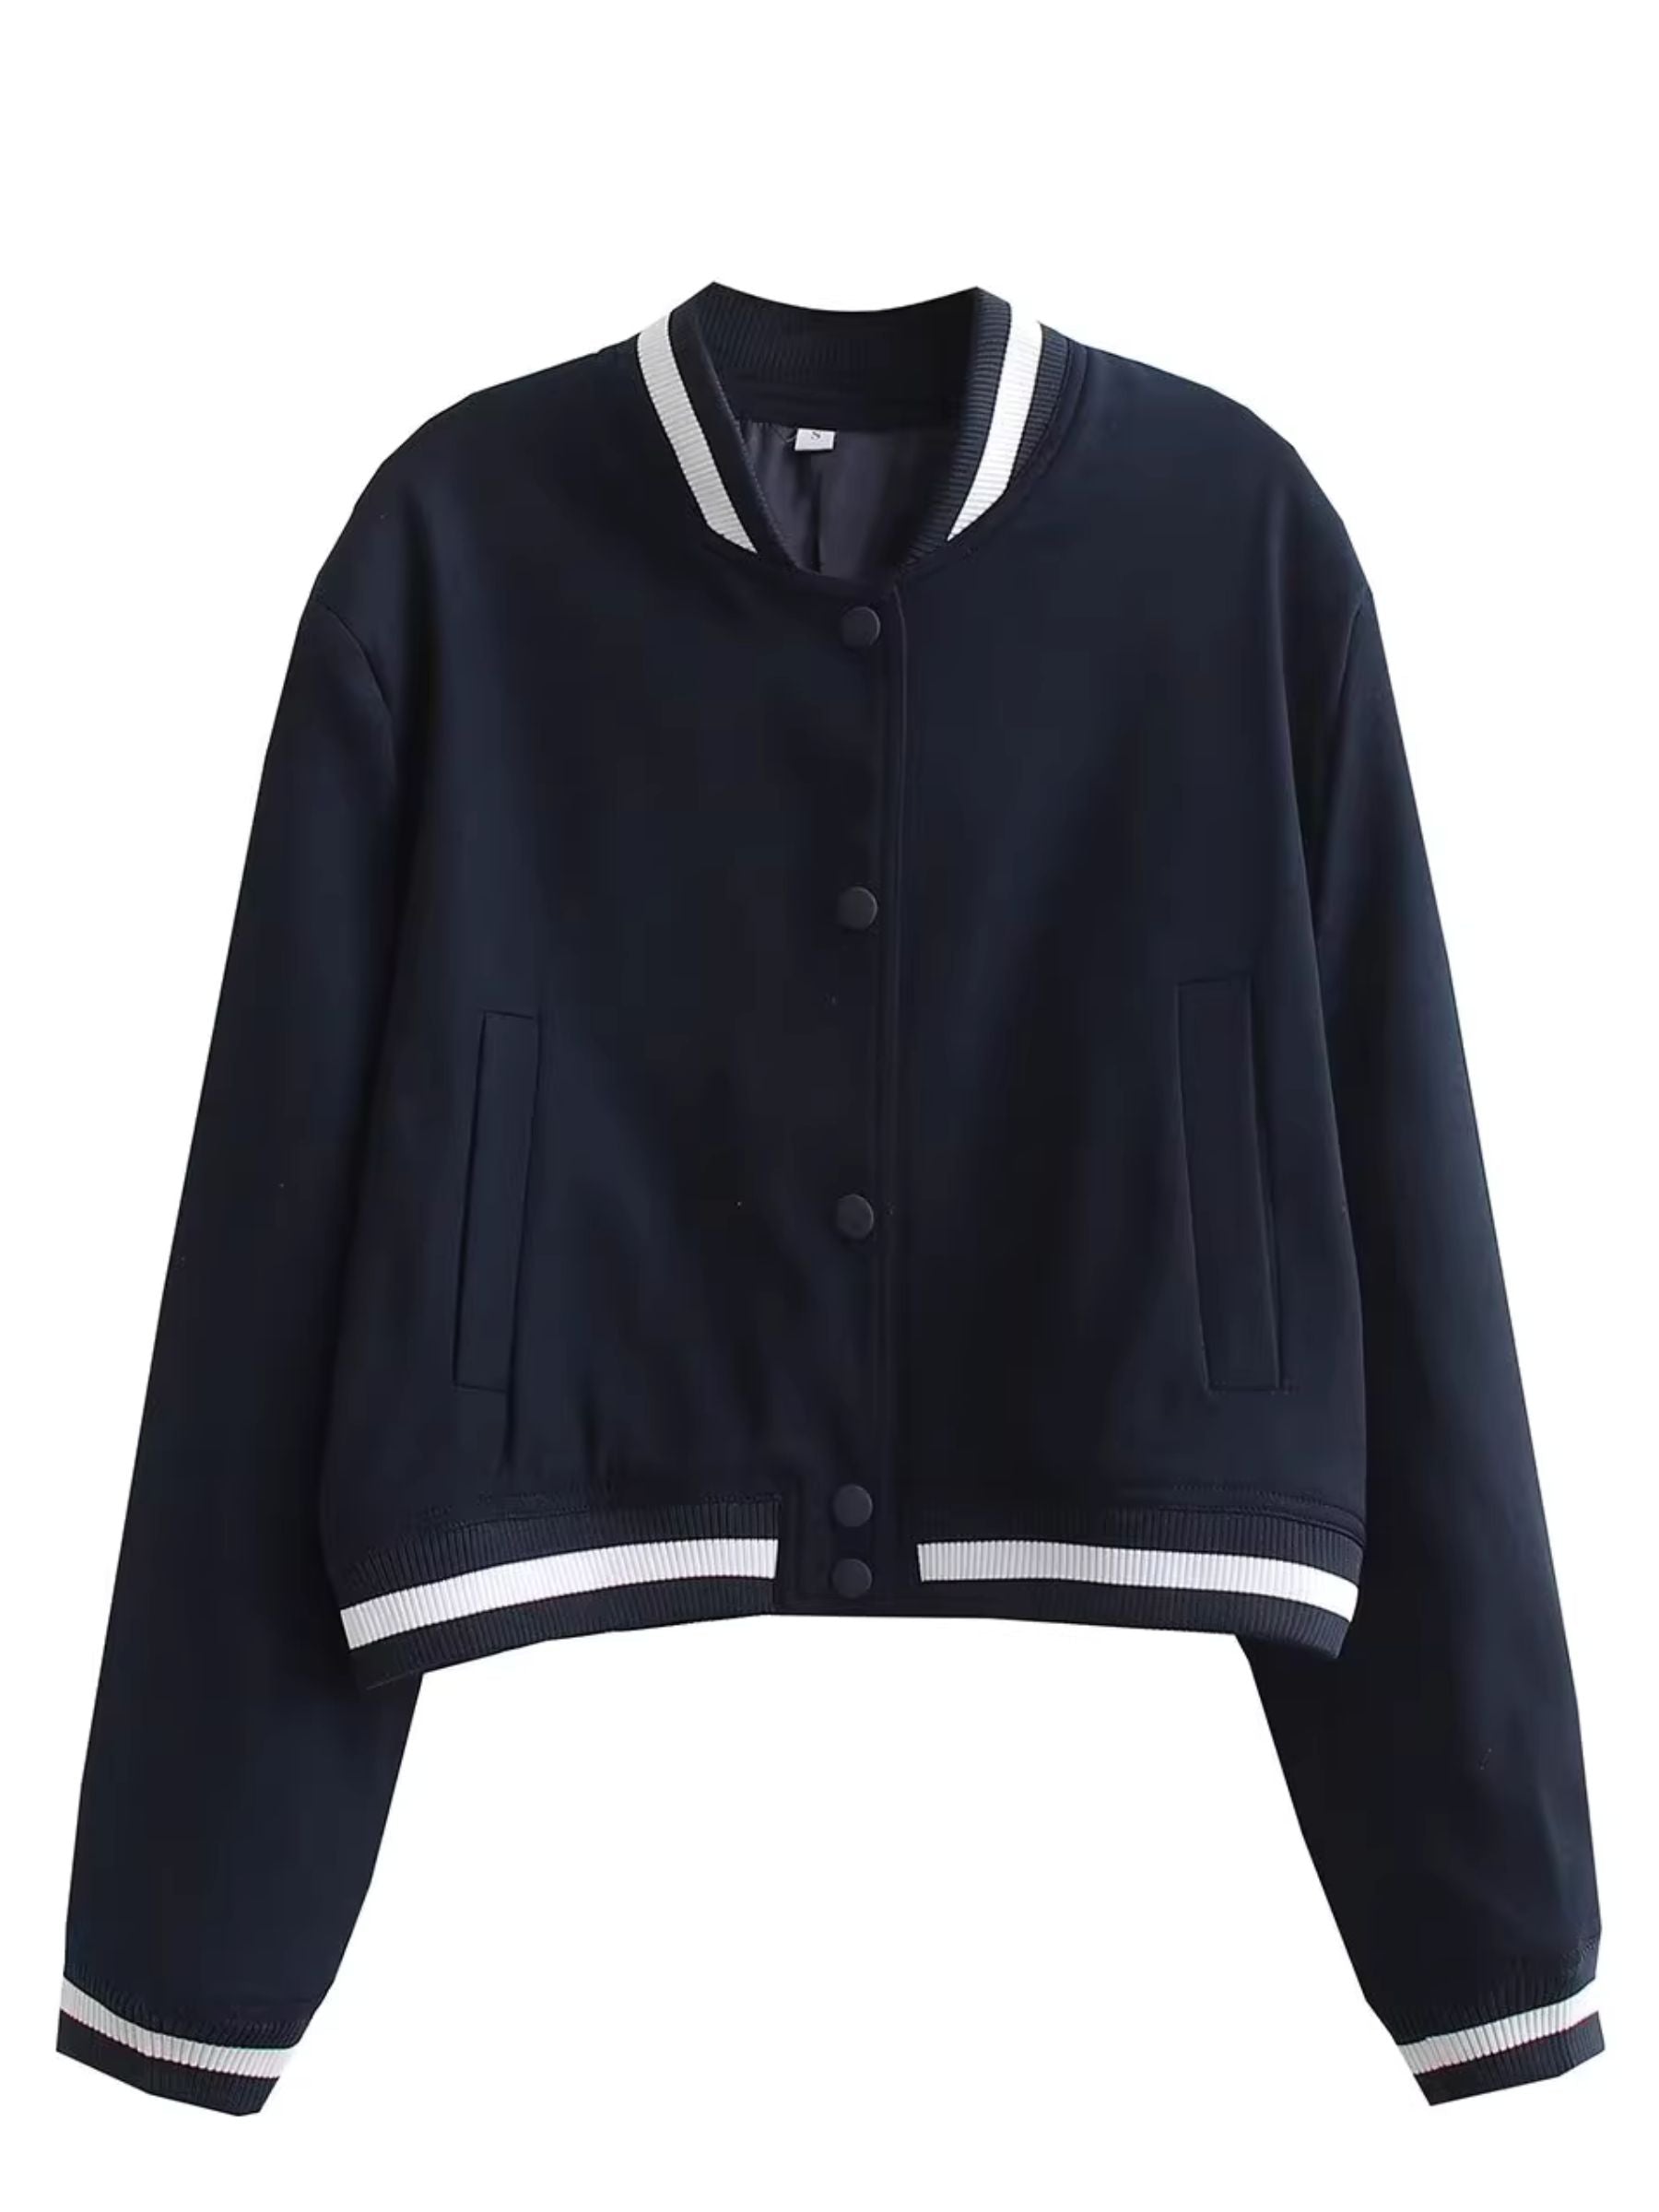 LaPose Fashion - Padme Loose Jacket - Baseball Jacket, Bomber Jacket, Coats & Jackets, Crop Jackets, Jackets, Winter Edit